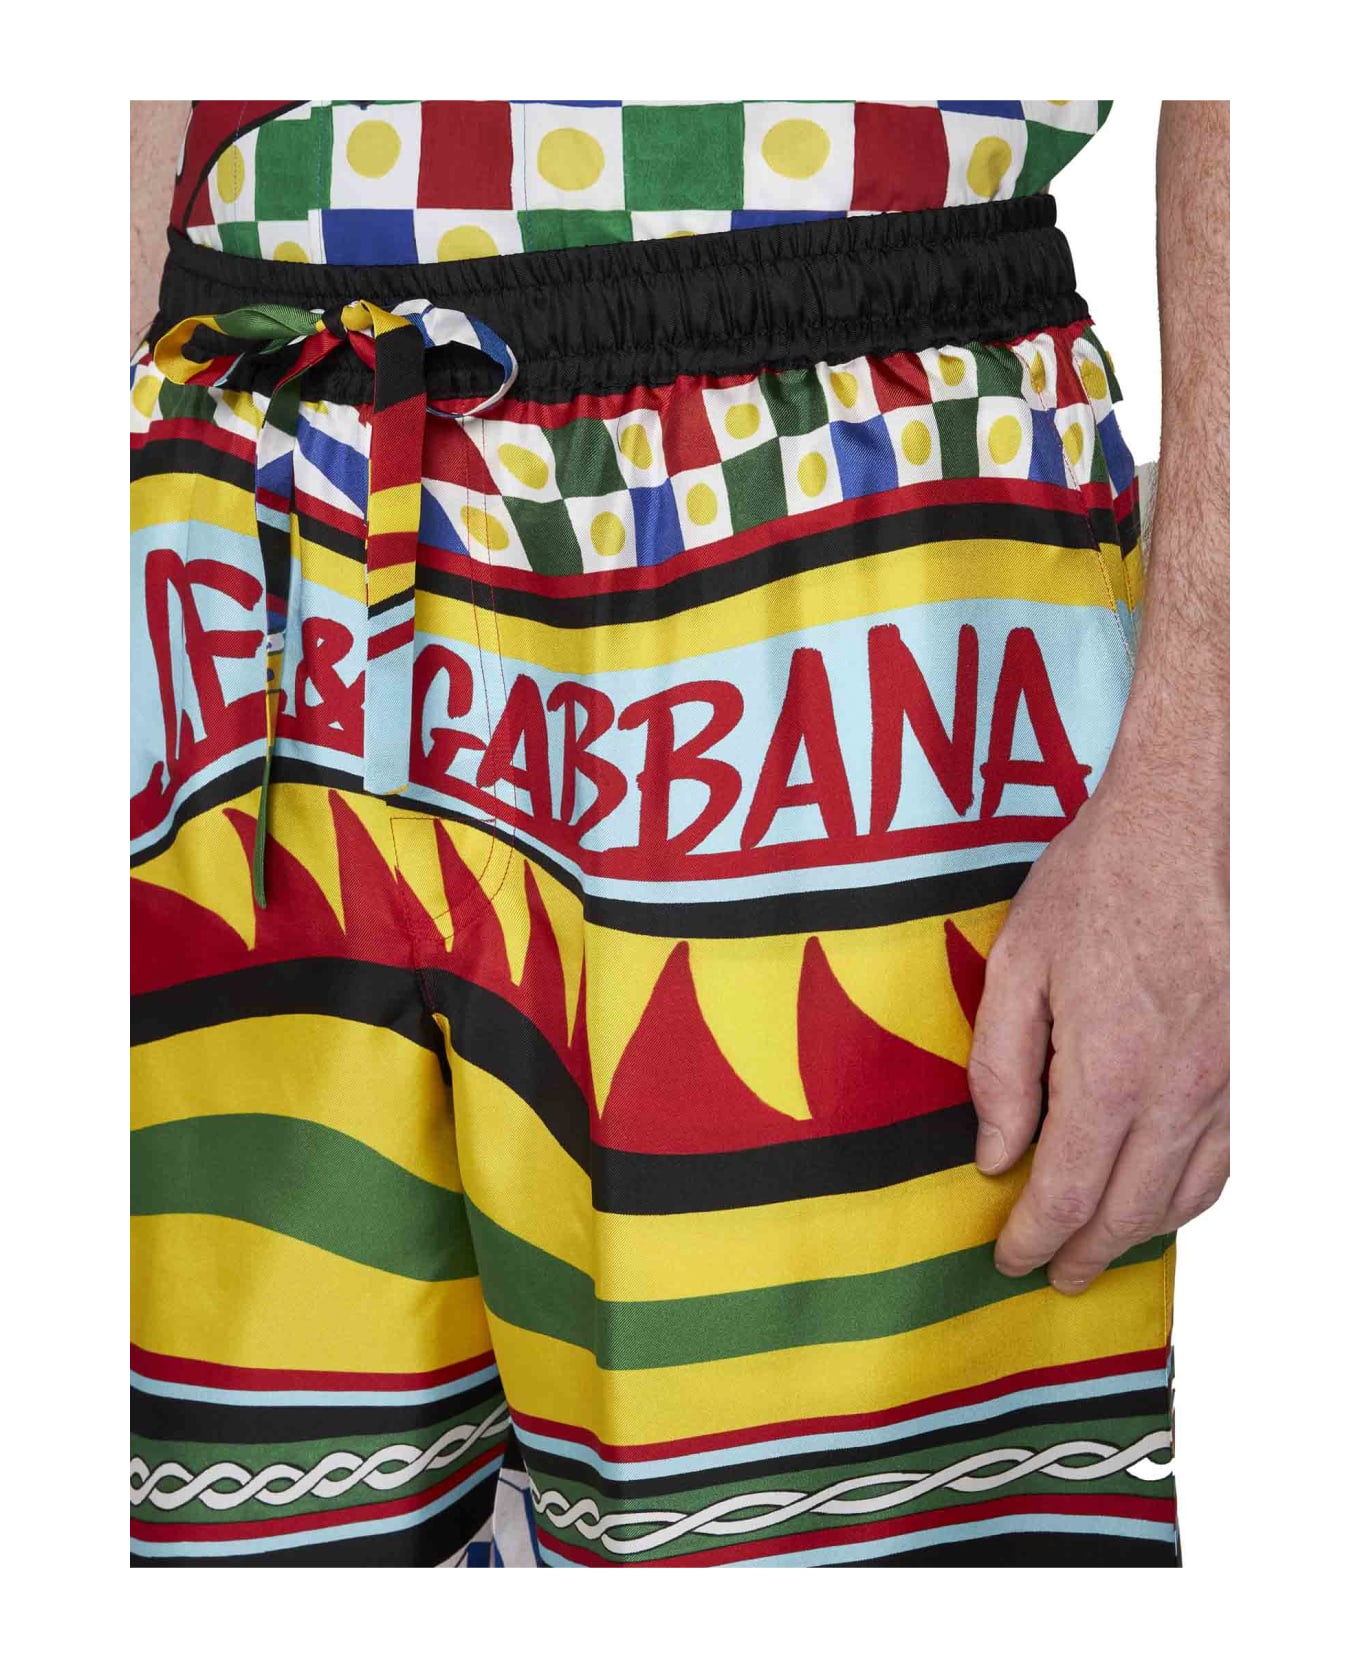 Dolce & Gabbana Shorts - Carretto